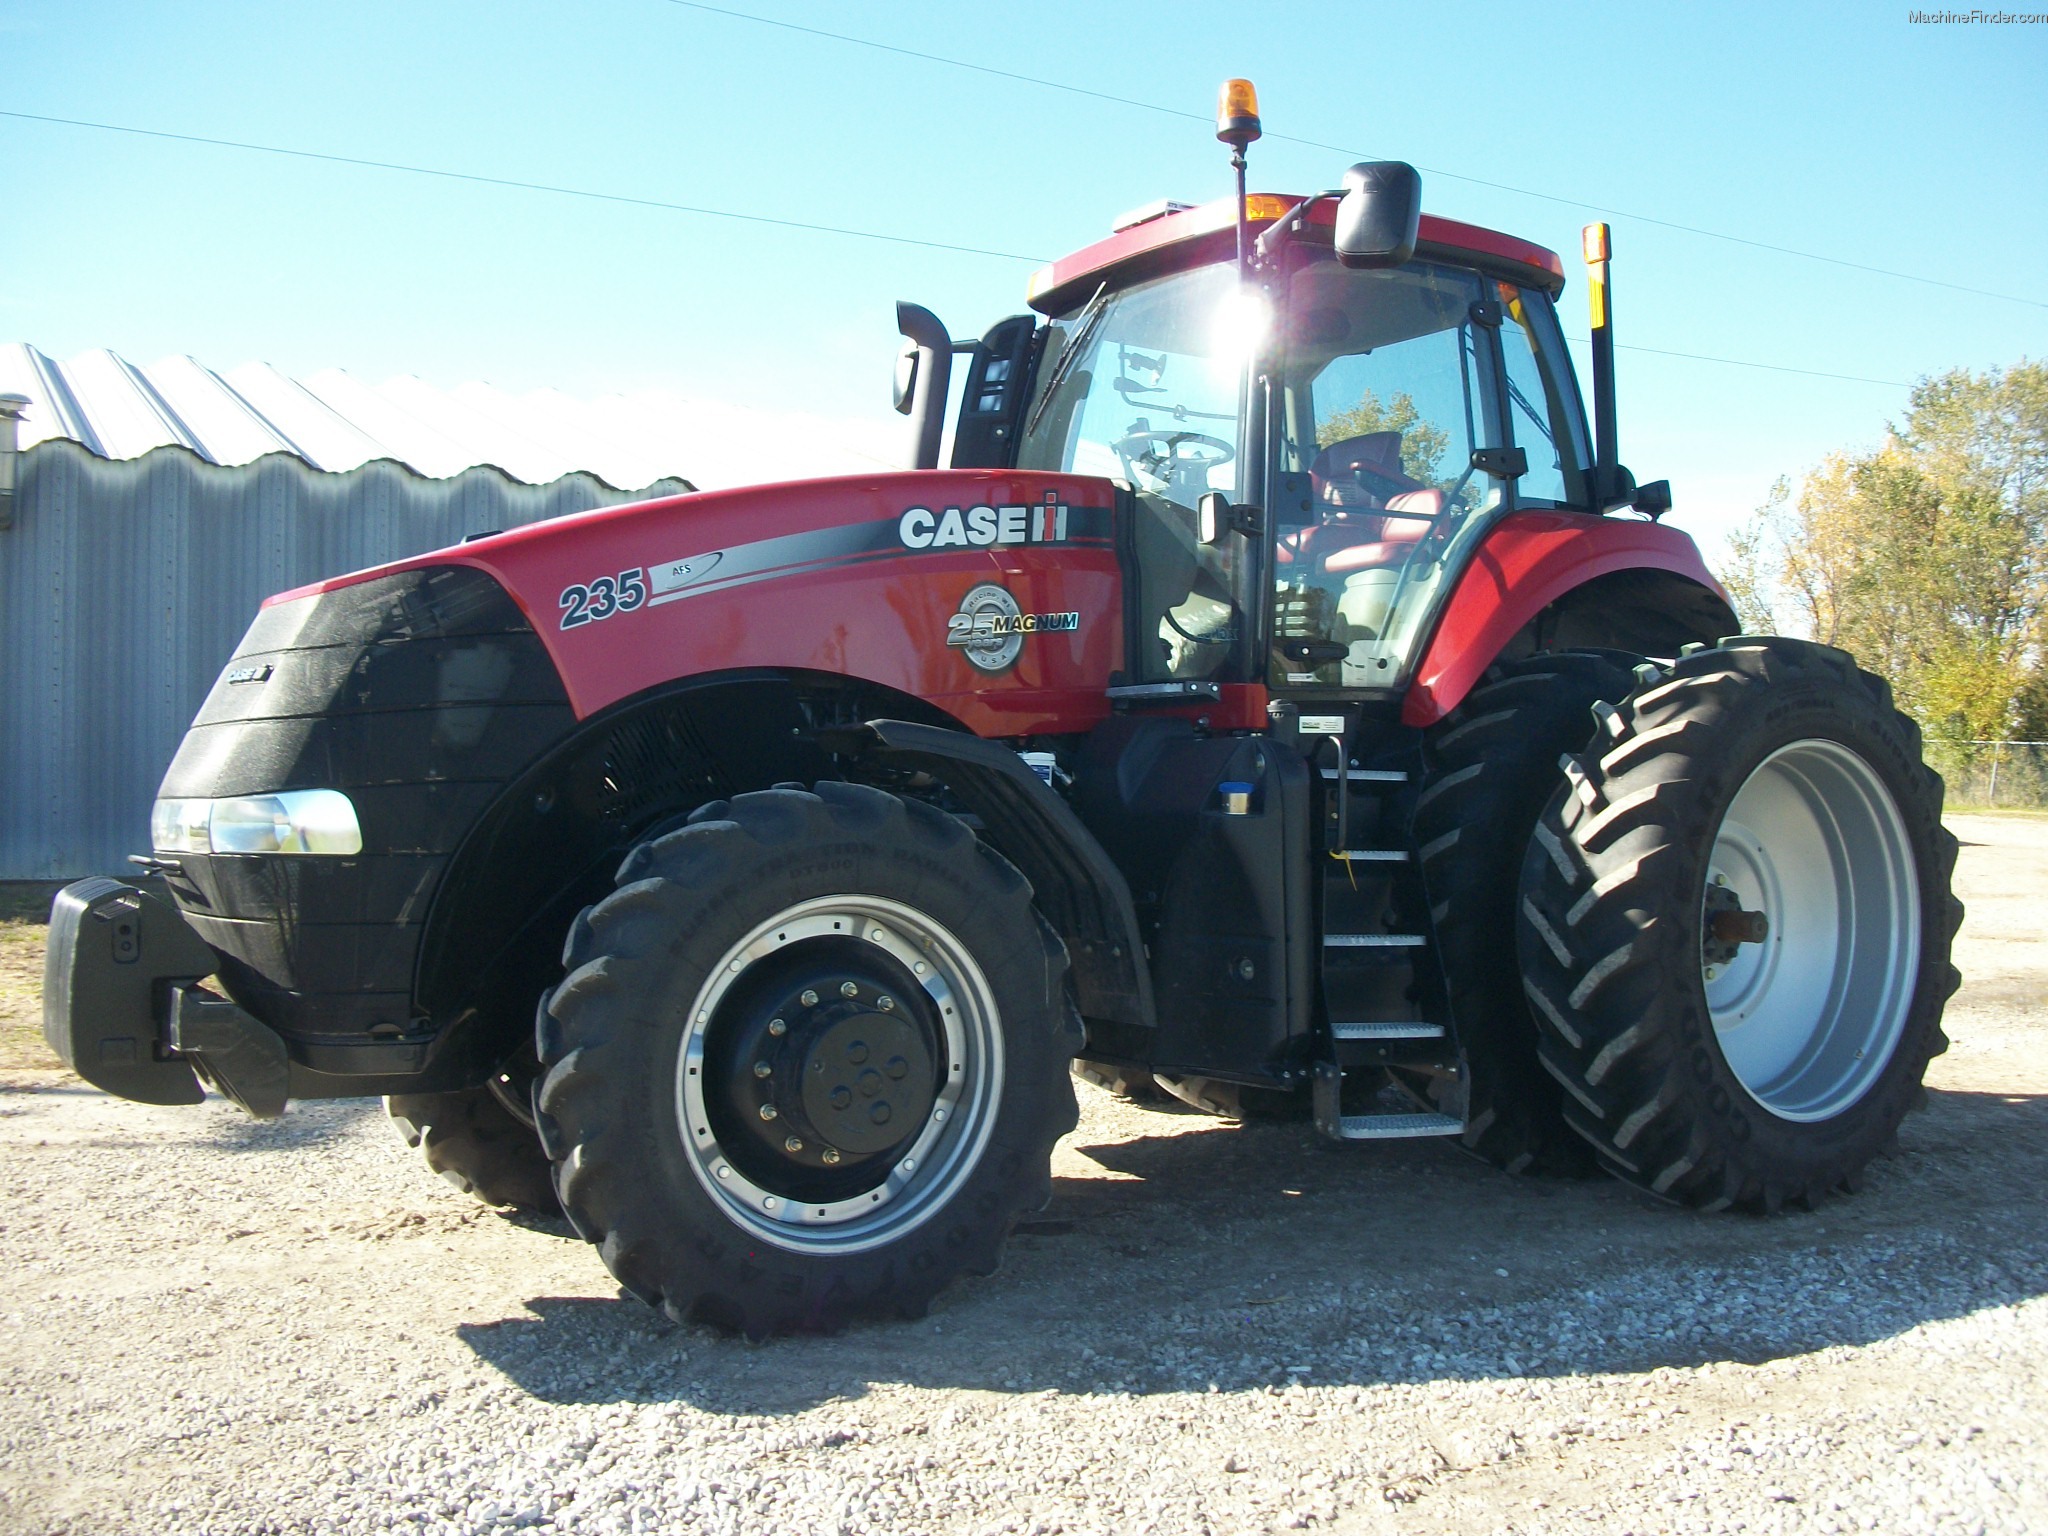 2013 Case IH Magnum 235 Tractors - Row Crop (+100hp) - John Deere ...